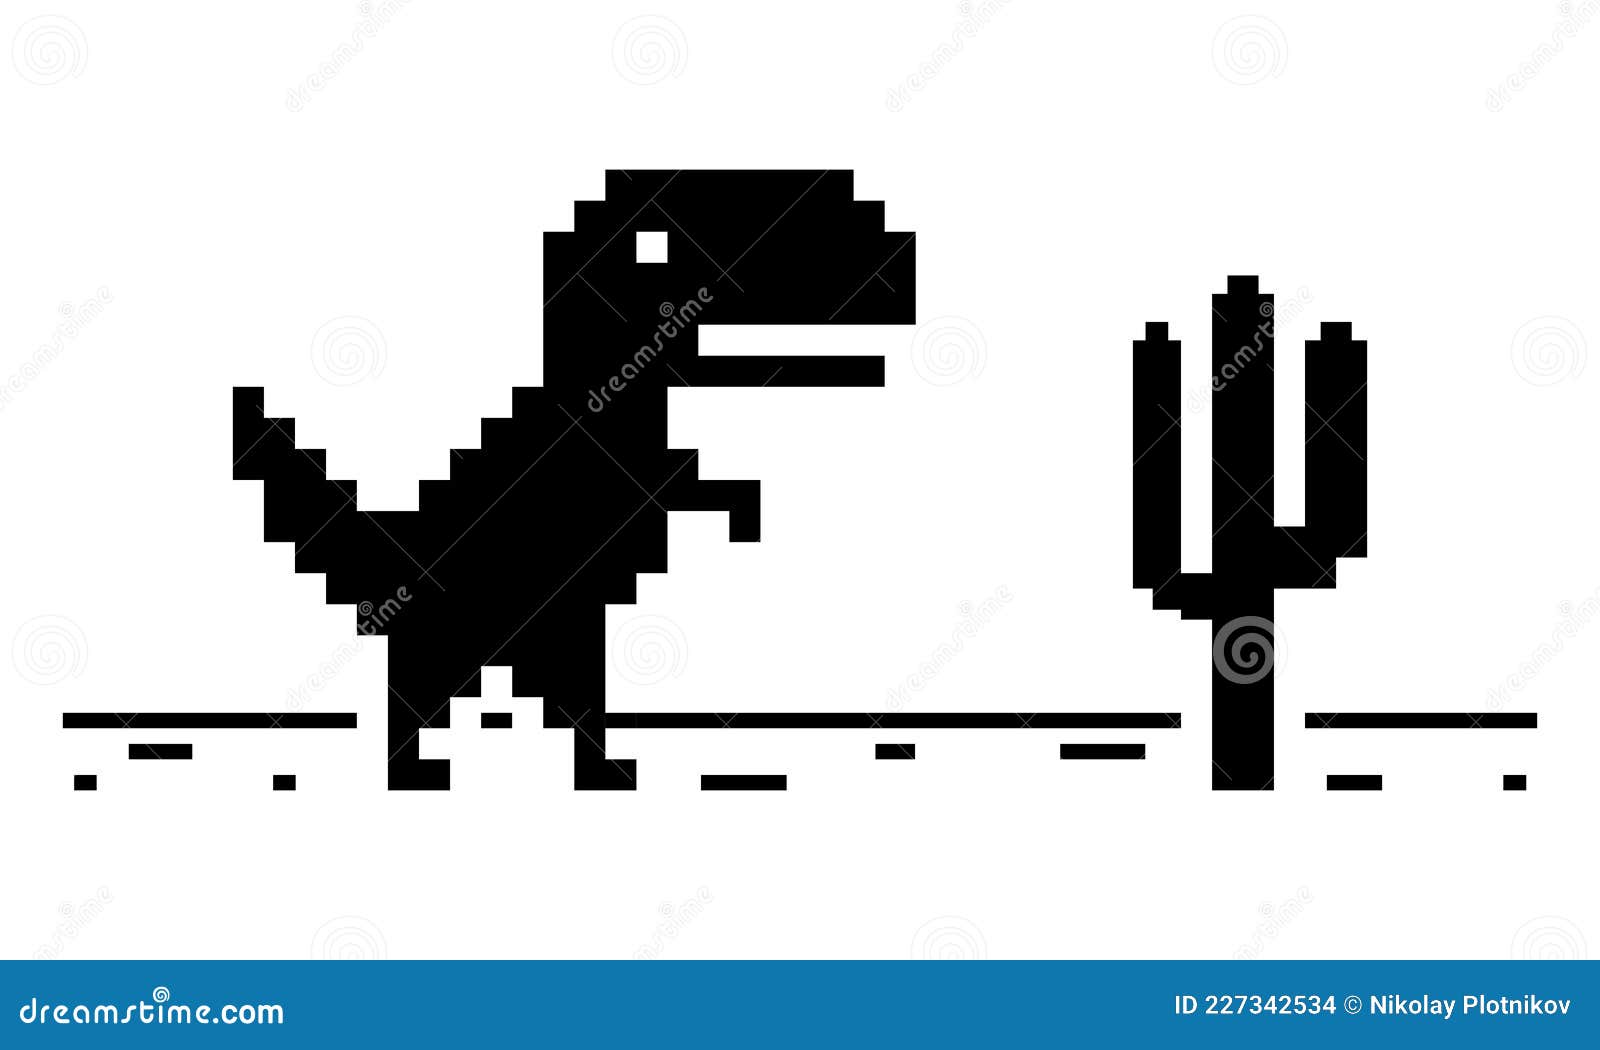 Pixel art de dinossauro descrevendo erro offline para internet